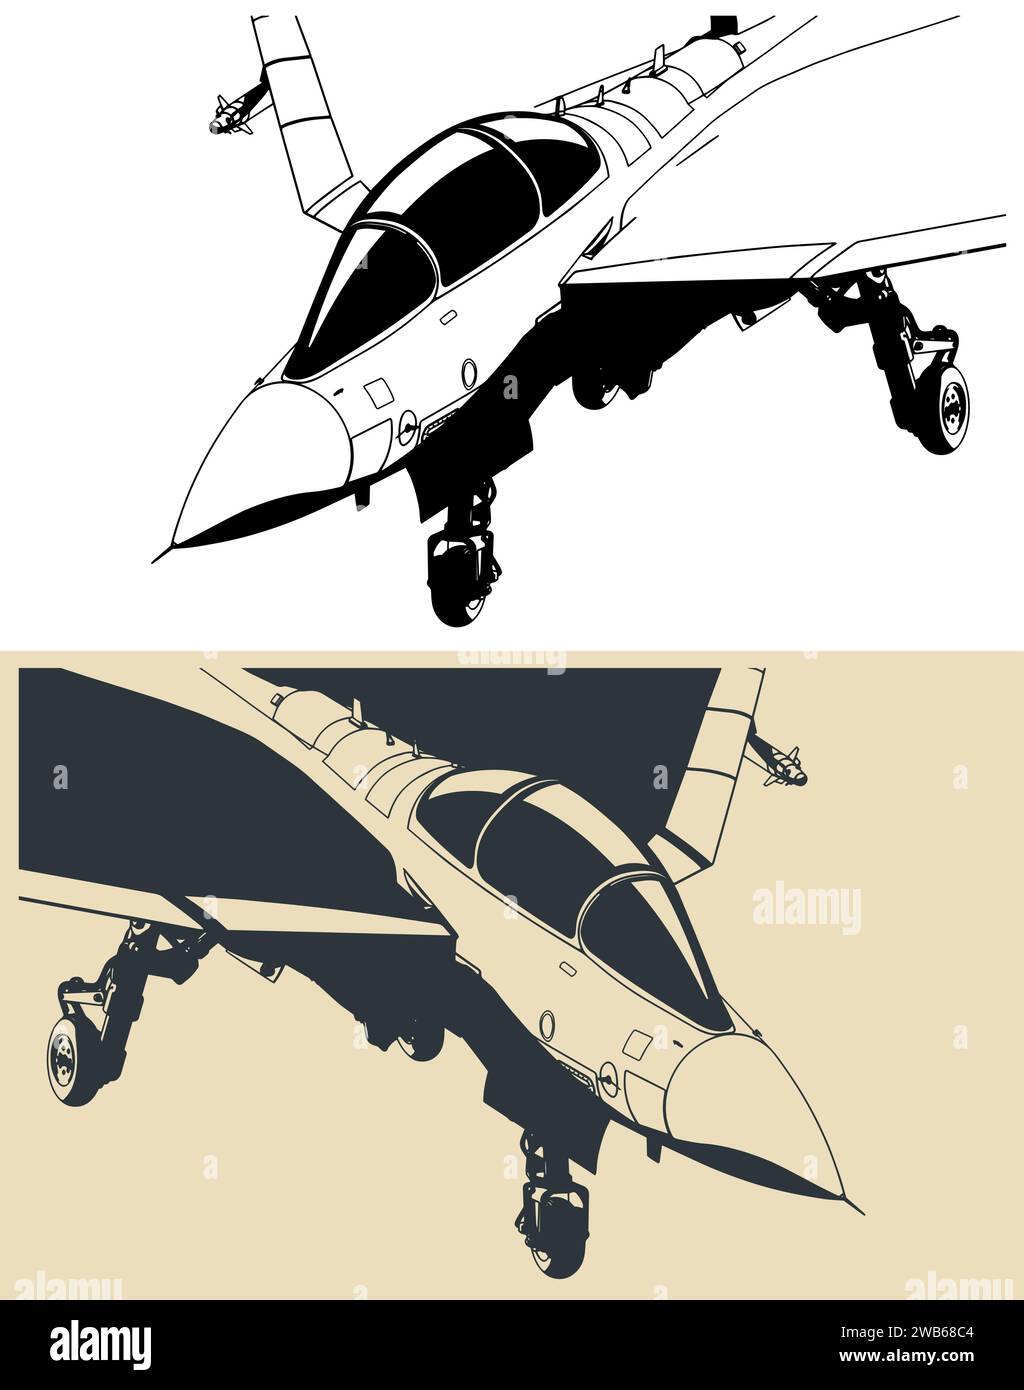 Stilisierte Zeichnung eines modernen Militärjets auf Basis eines leichten Trägers Stock Vektor